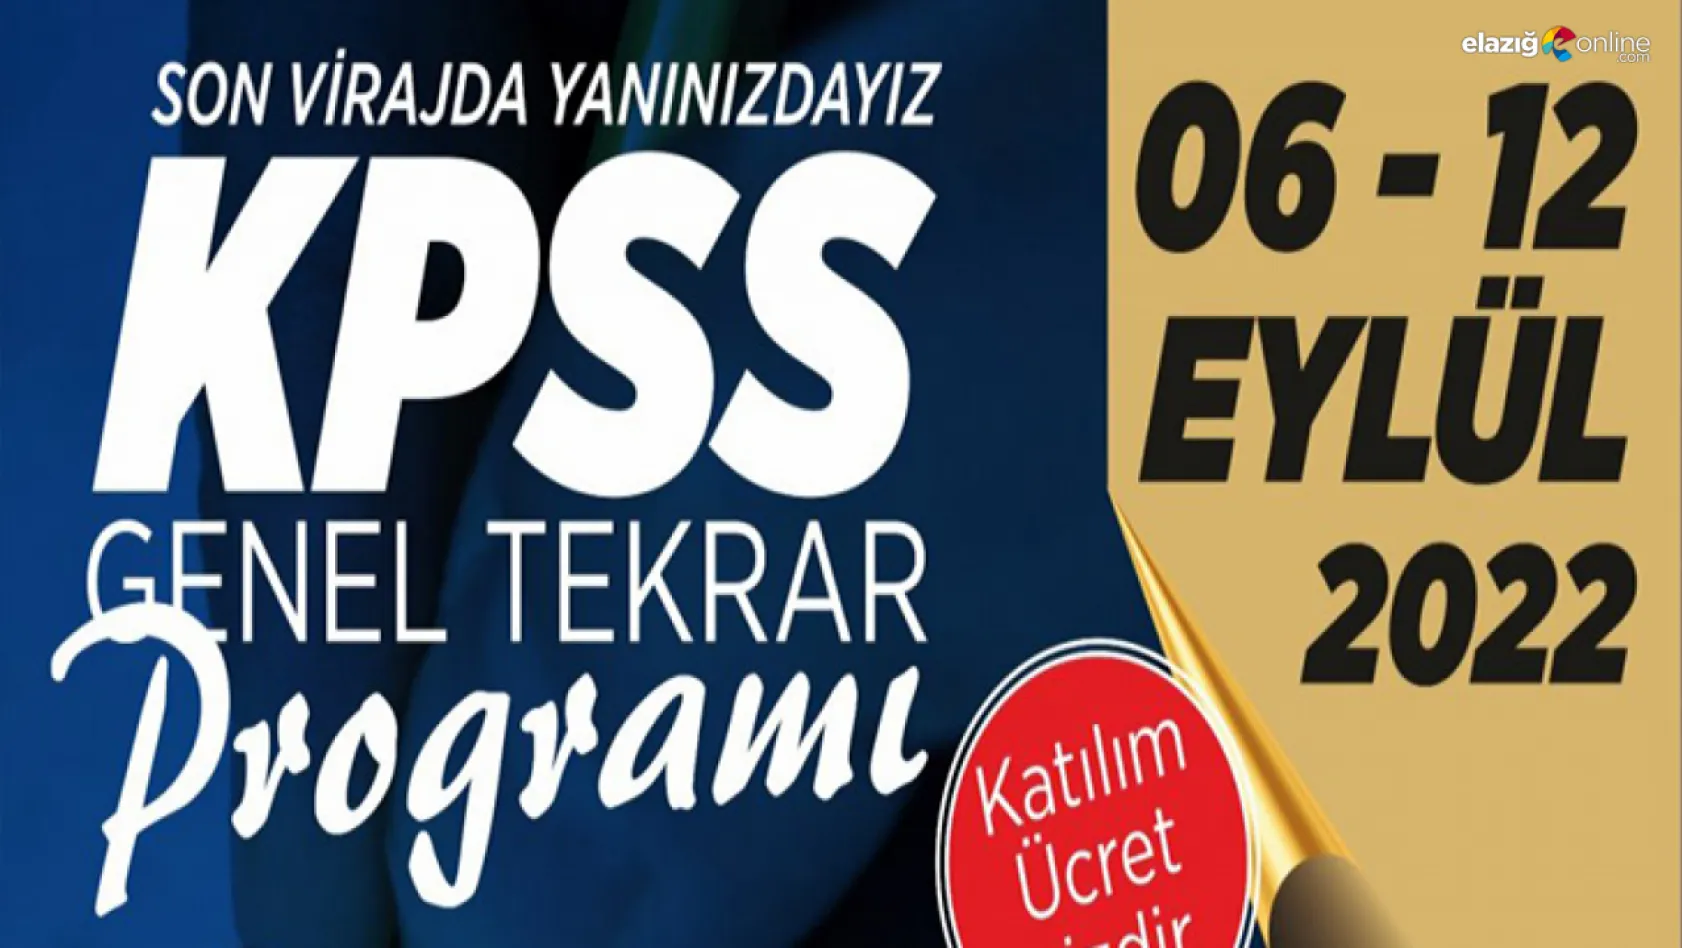 Elazığ Belediyesi'nden ücretsiz KPSS tekrar dersleri